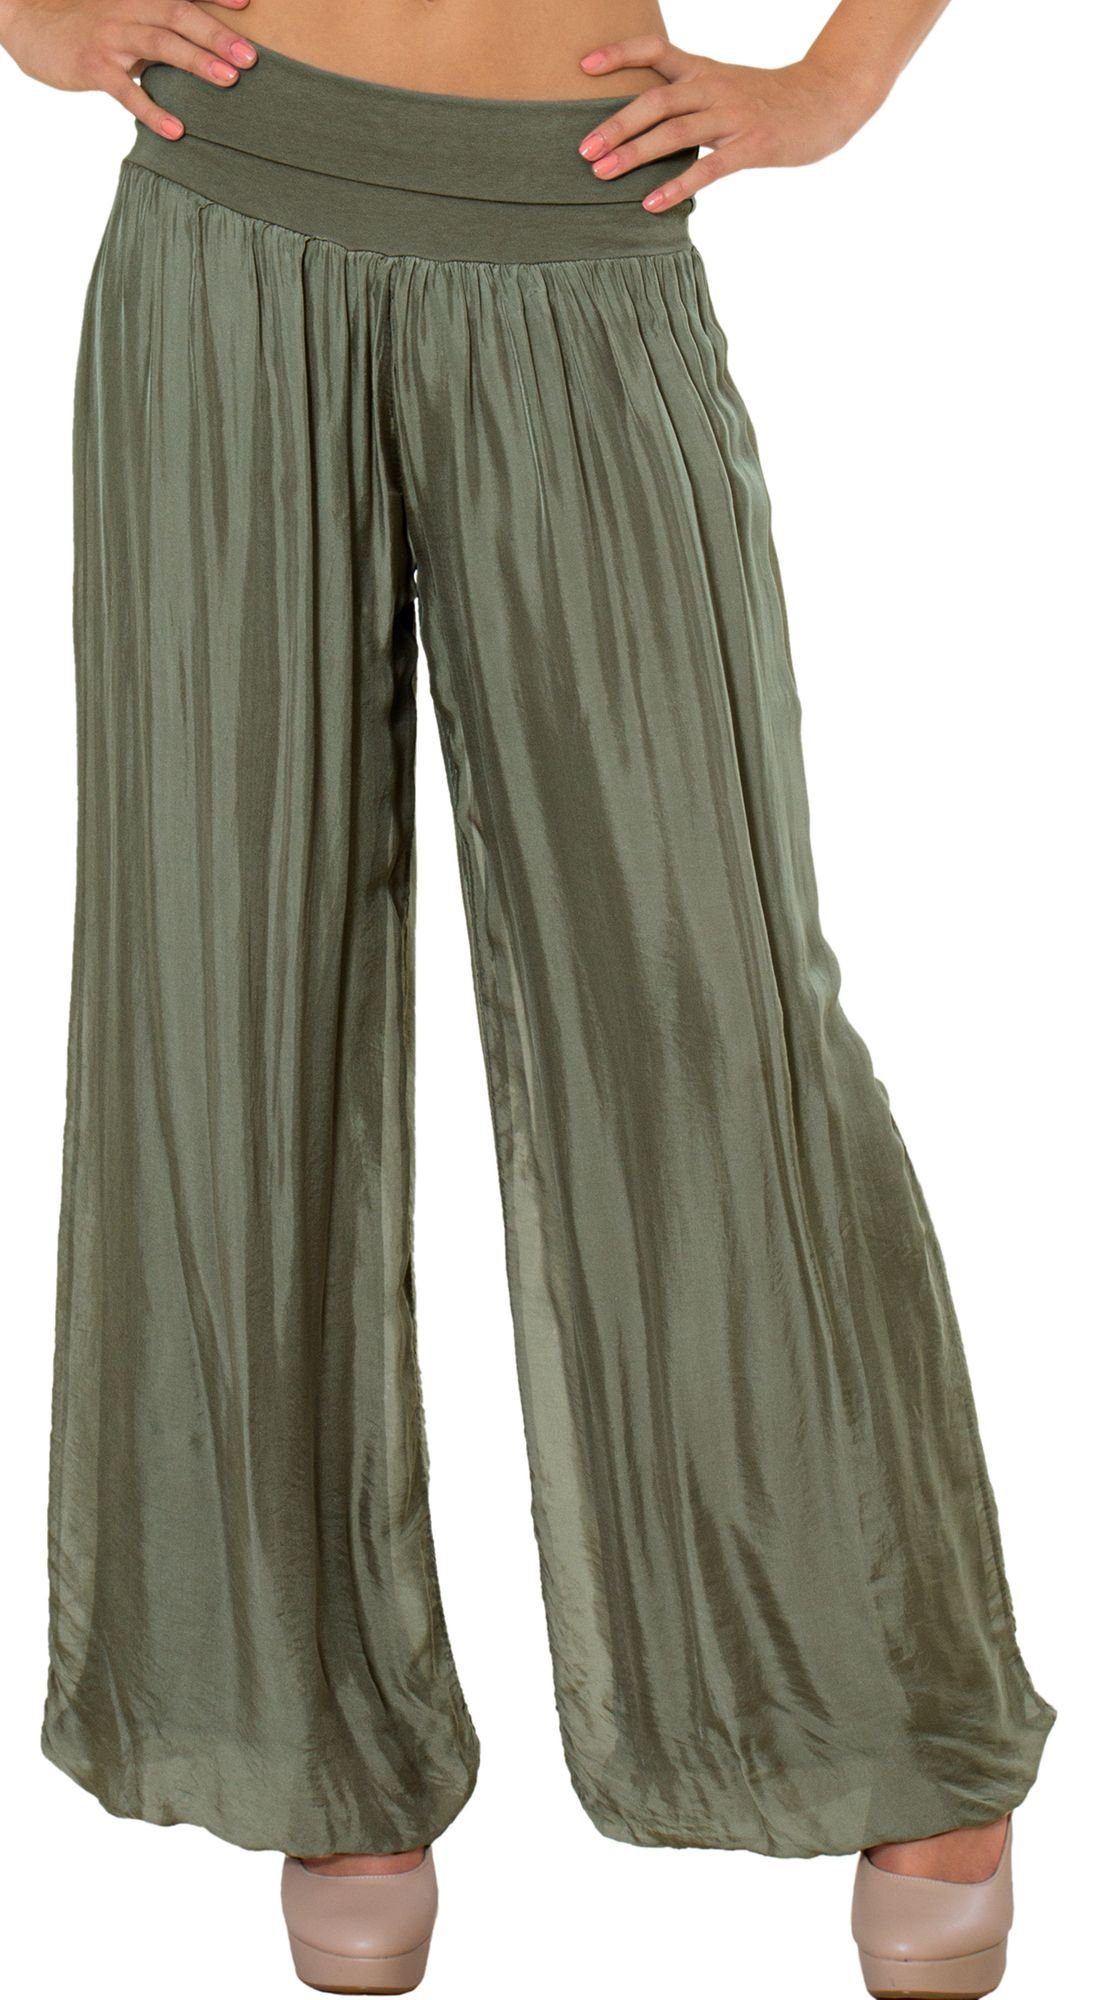 Caspar Palazzohose KHS010 elegante Damen Hose mit Seidenanteil und hohem Stretch Bund oliv grün